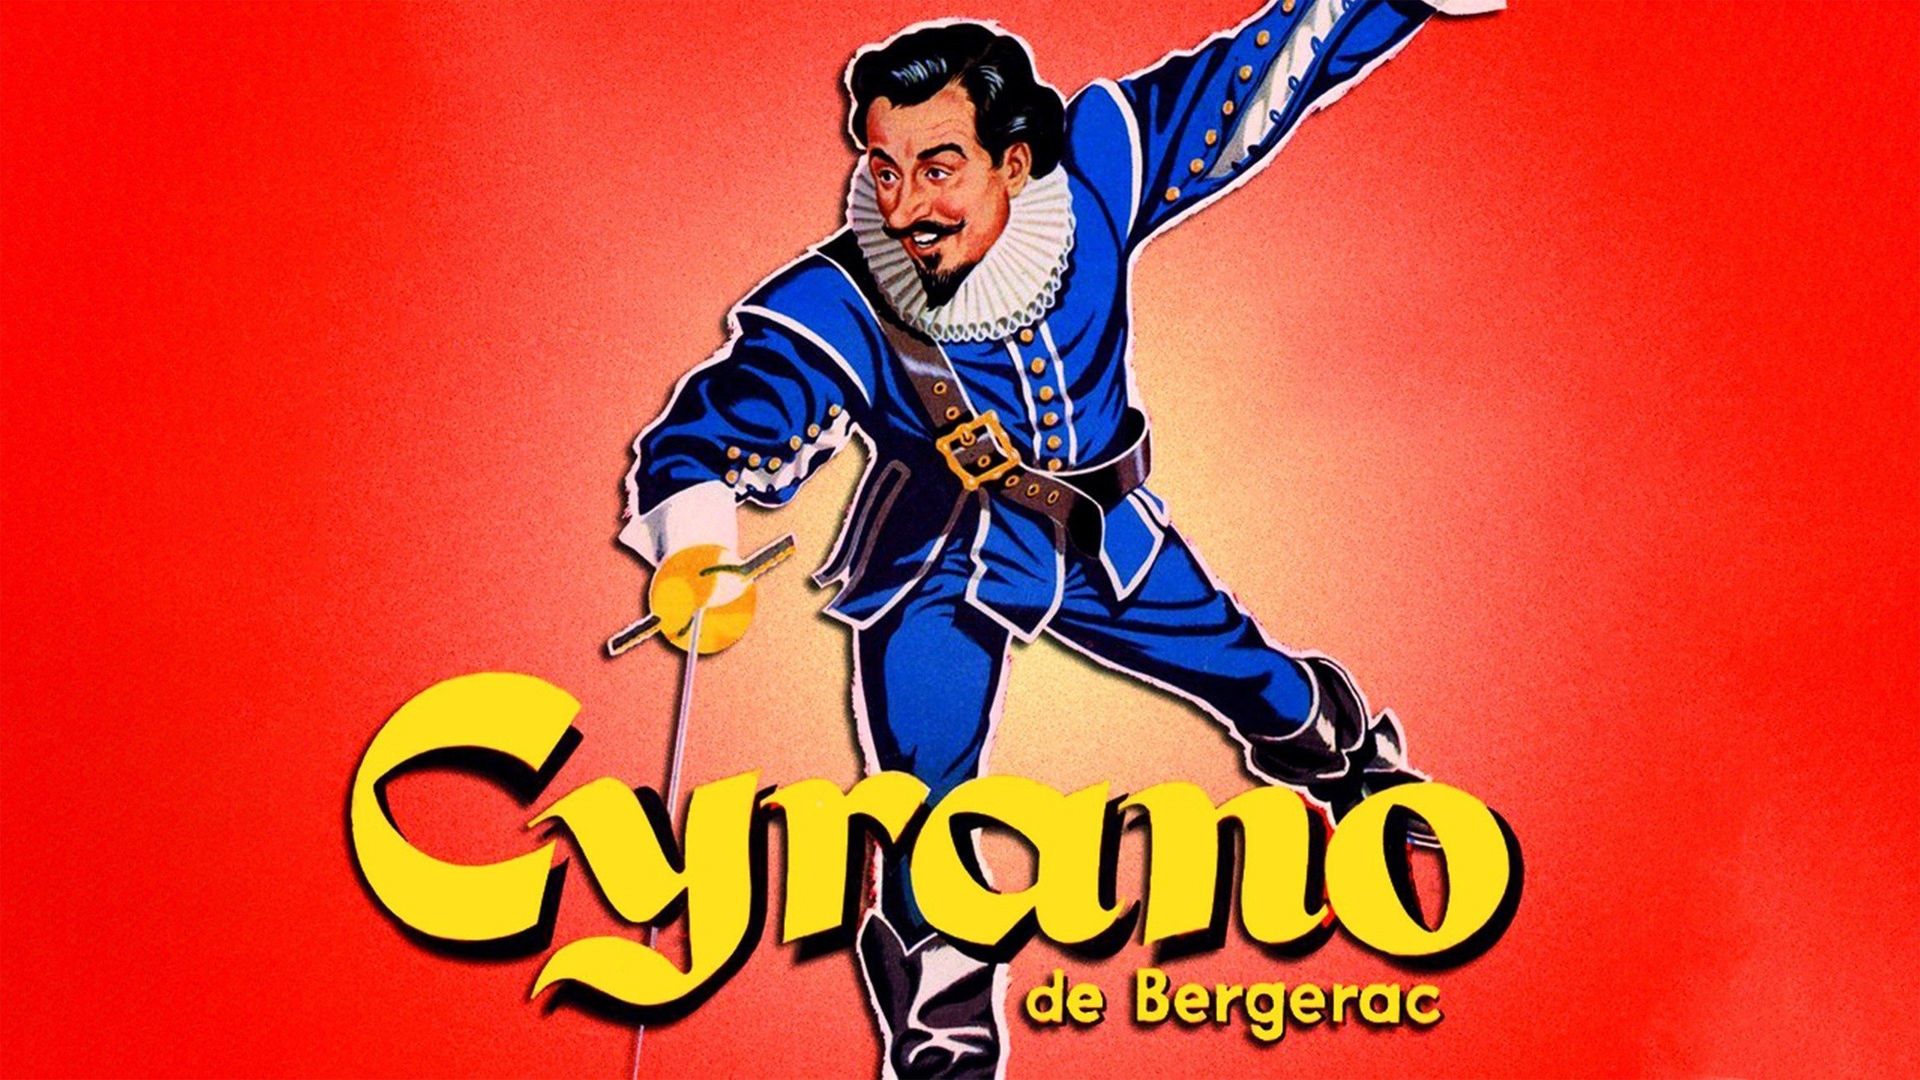 Cyrano de Bergerac Backdrop